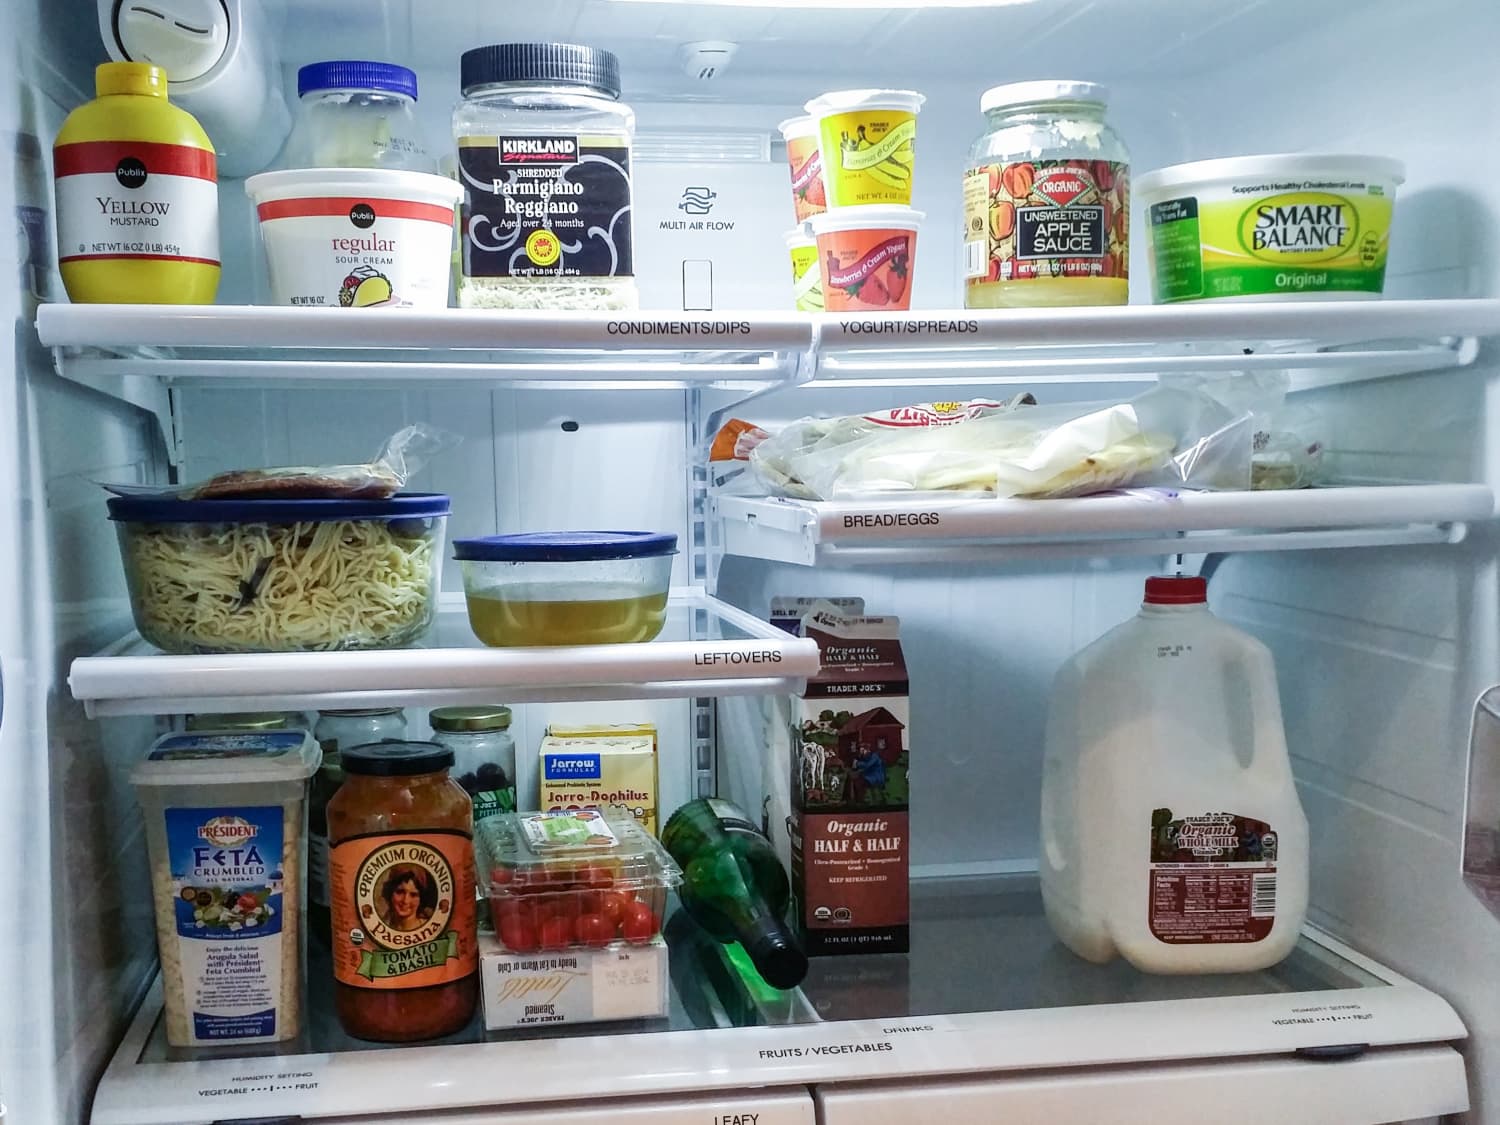 Можно горячий суп ставить в холодильник. Горячая еда в холодильнике. Холодильник с водичкой. Треснула полка в холодильнике. Холодильник обычного человека.